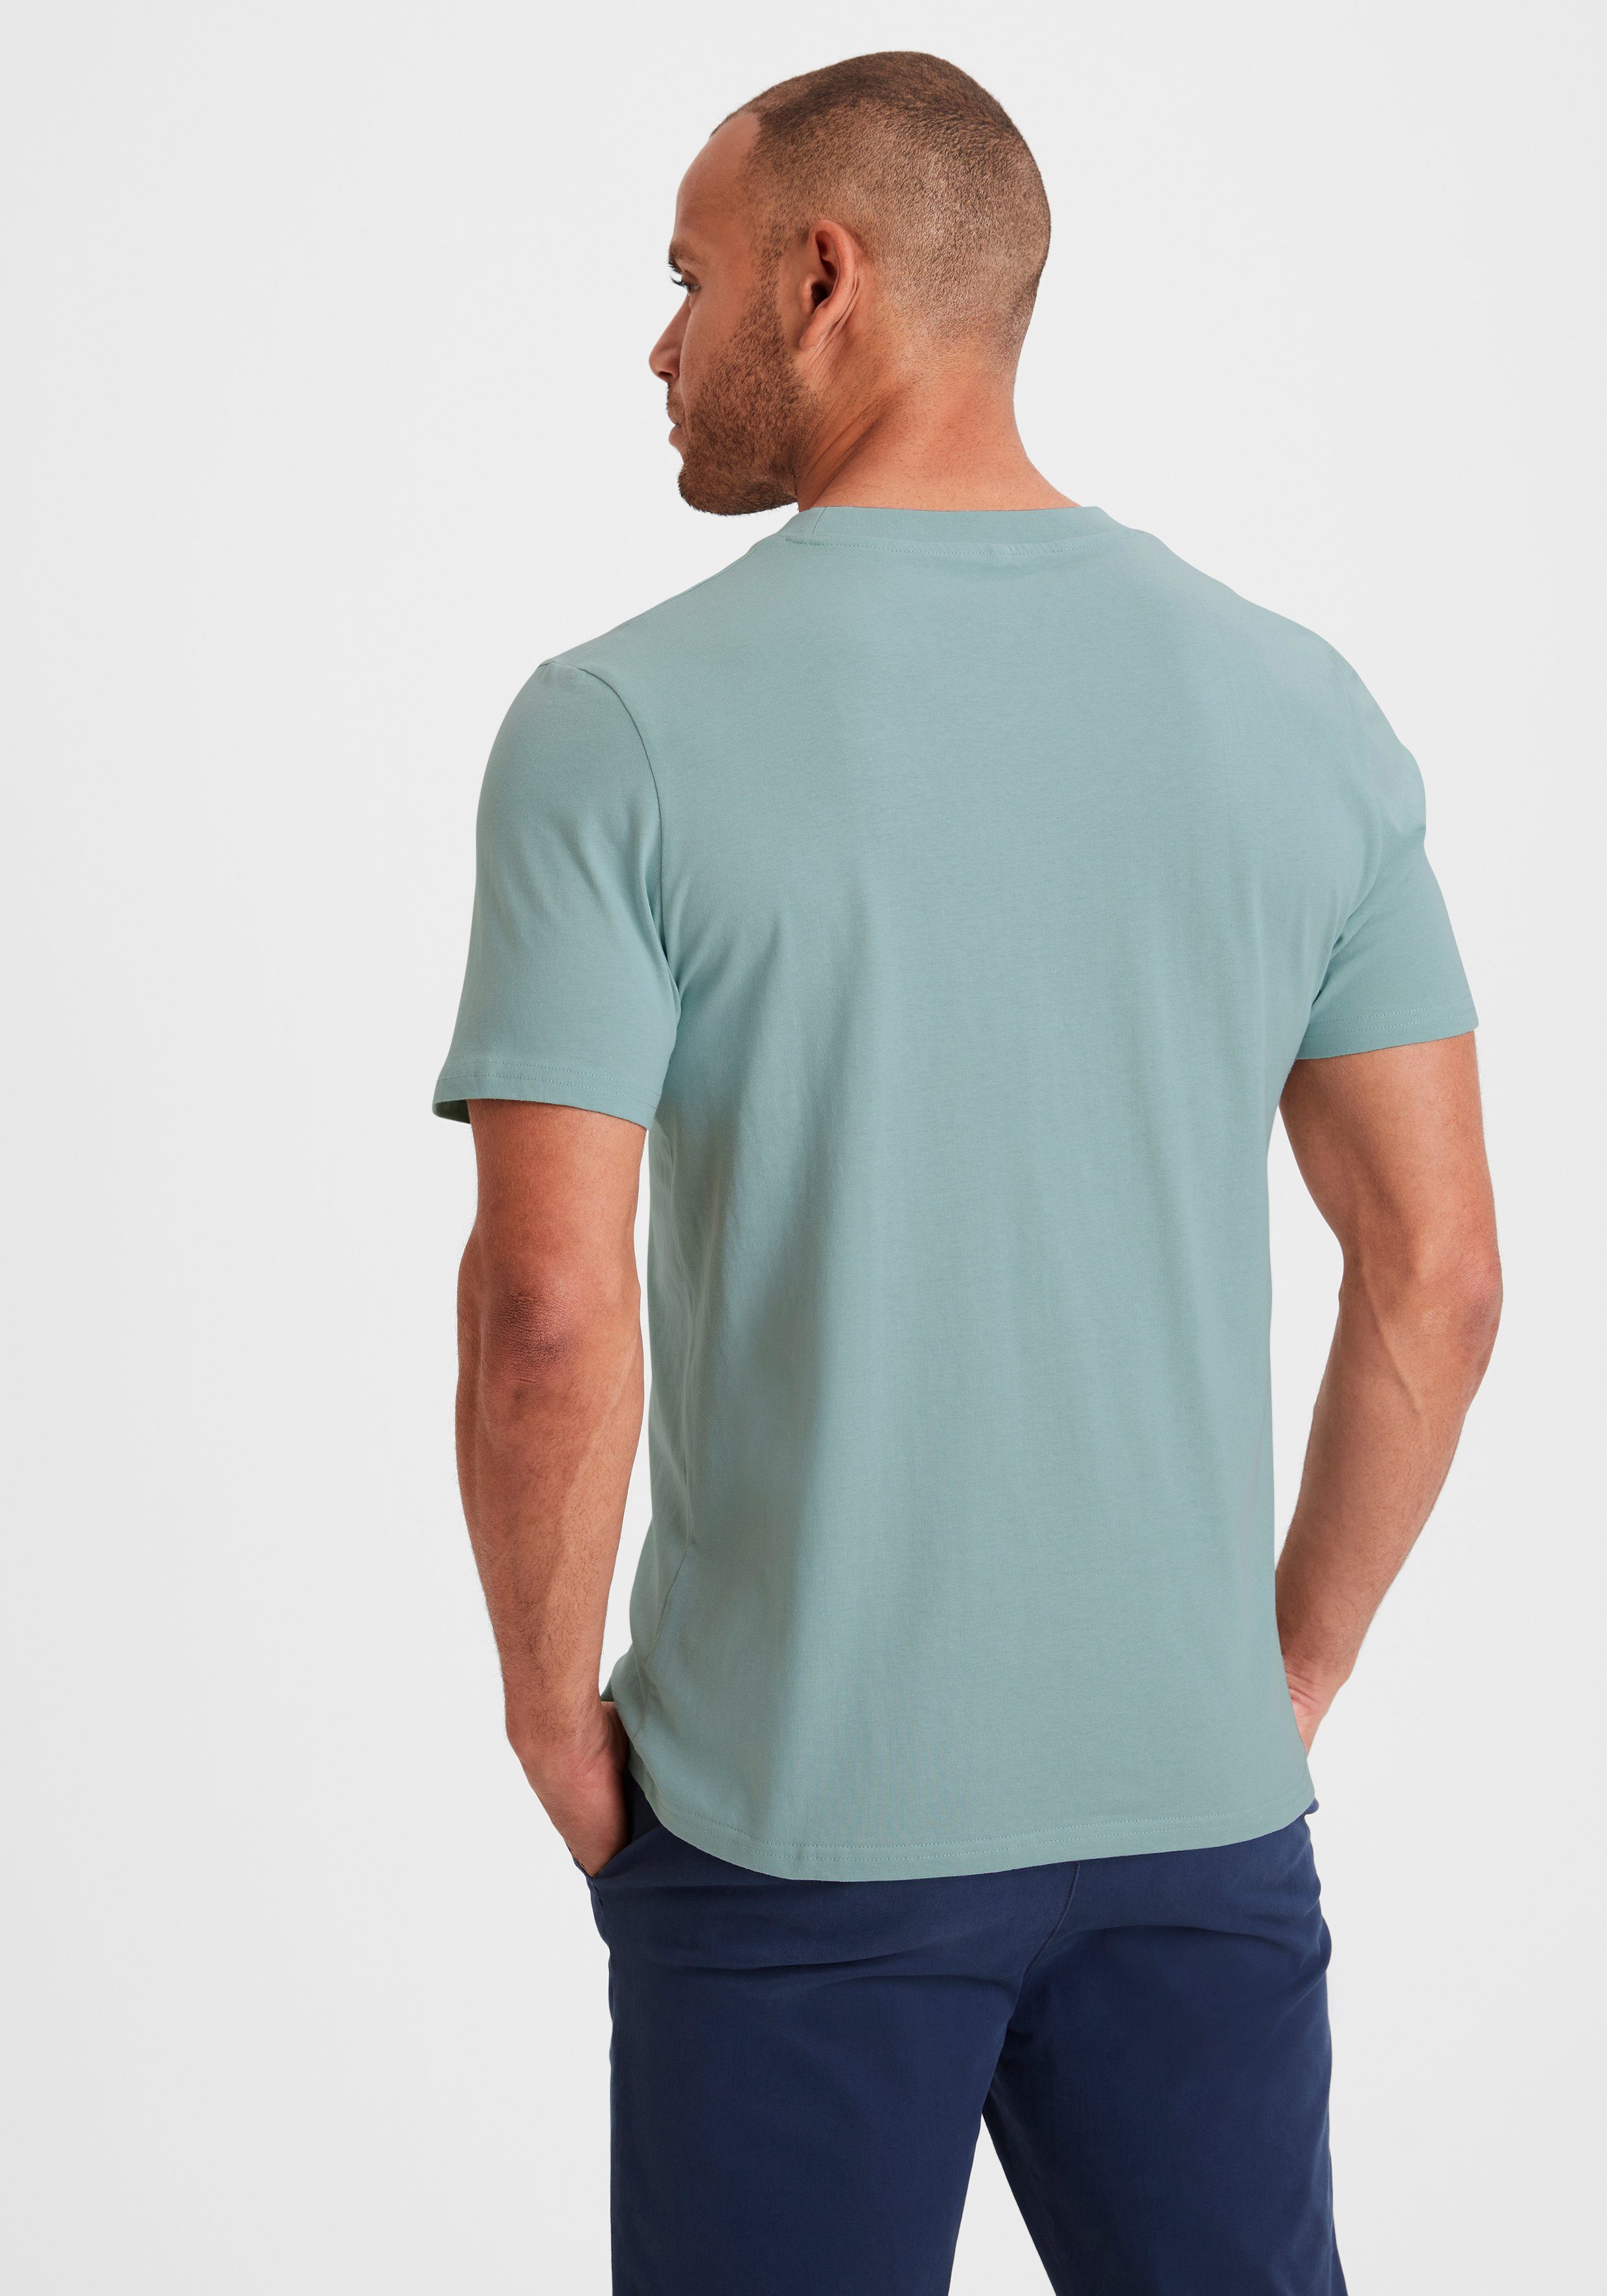 Must-Have Form stein in ein / KangaROOS (2er-Pack) klassischer T-Shirt mint